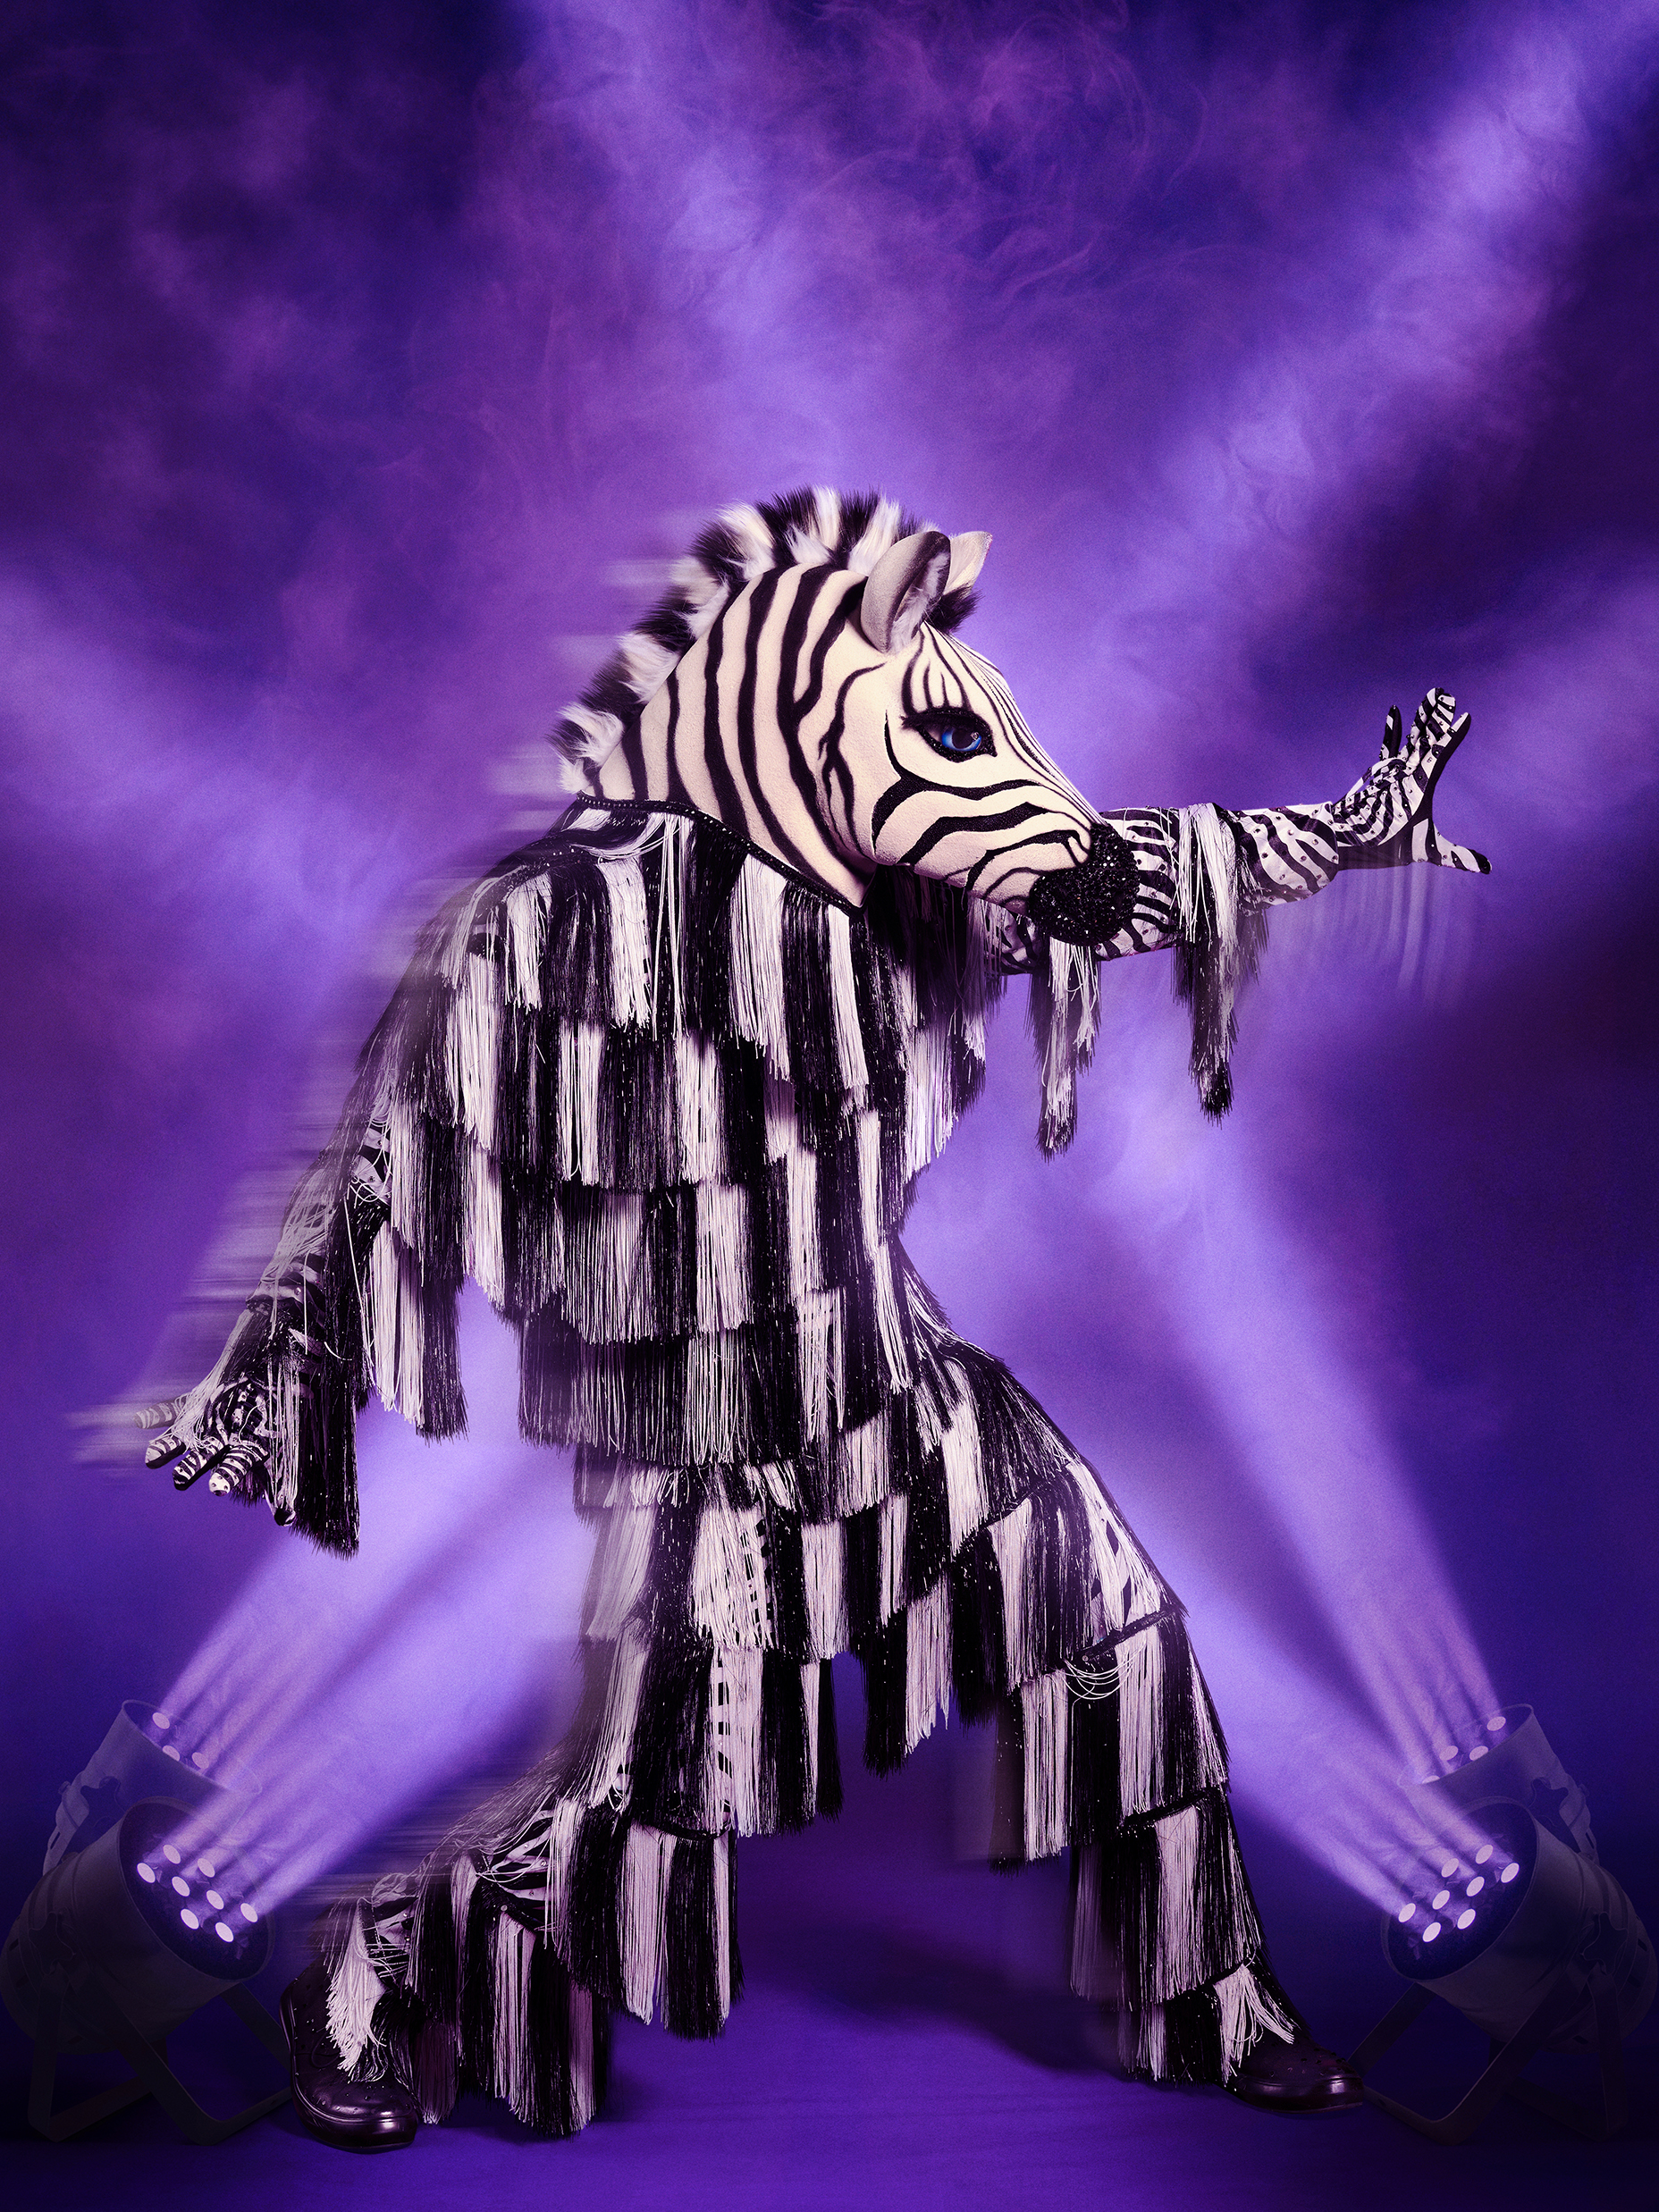 Zebra - The Masked Dancer